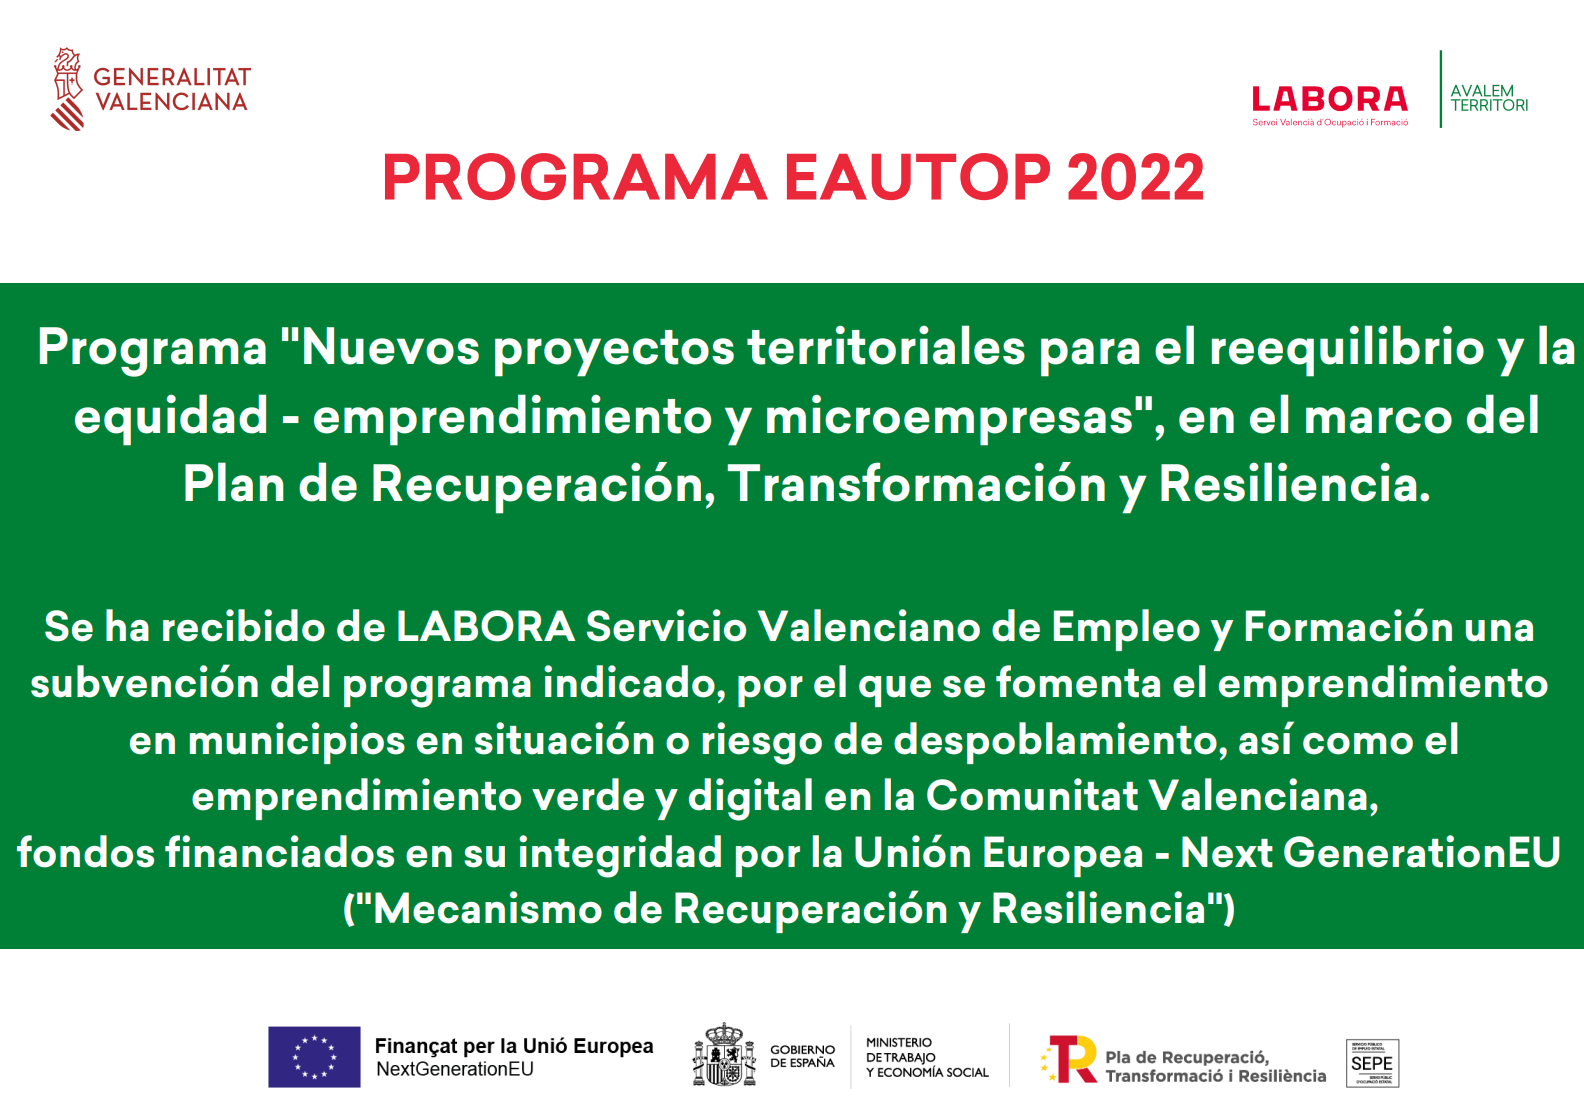 Programa "Nuevos proyectos territoriales para el reequilibrio y laequidad - emprendimiento y microempresas", en el marco del Plan de Recuperación, transformación y Resiliencia.